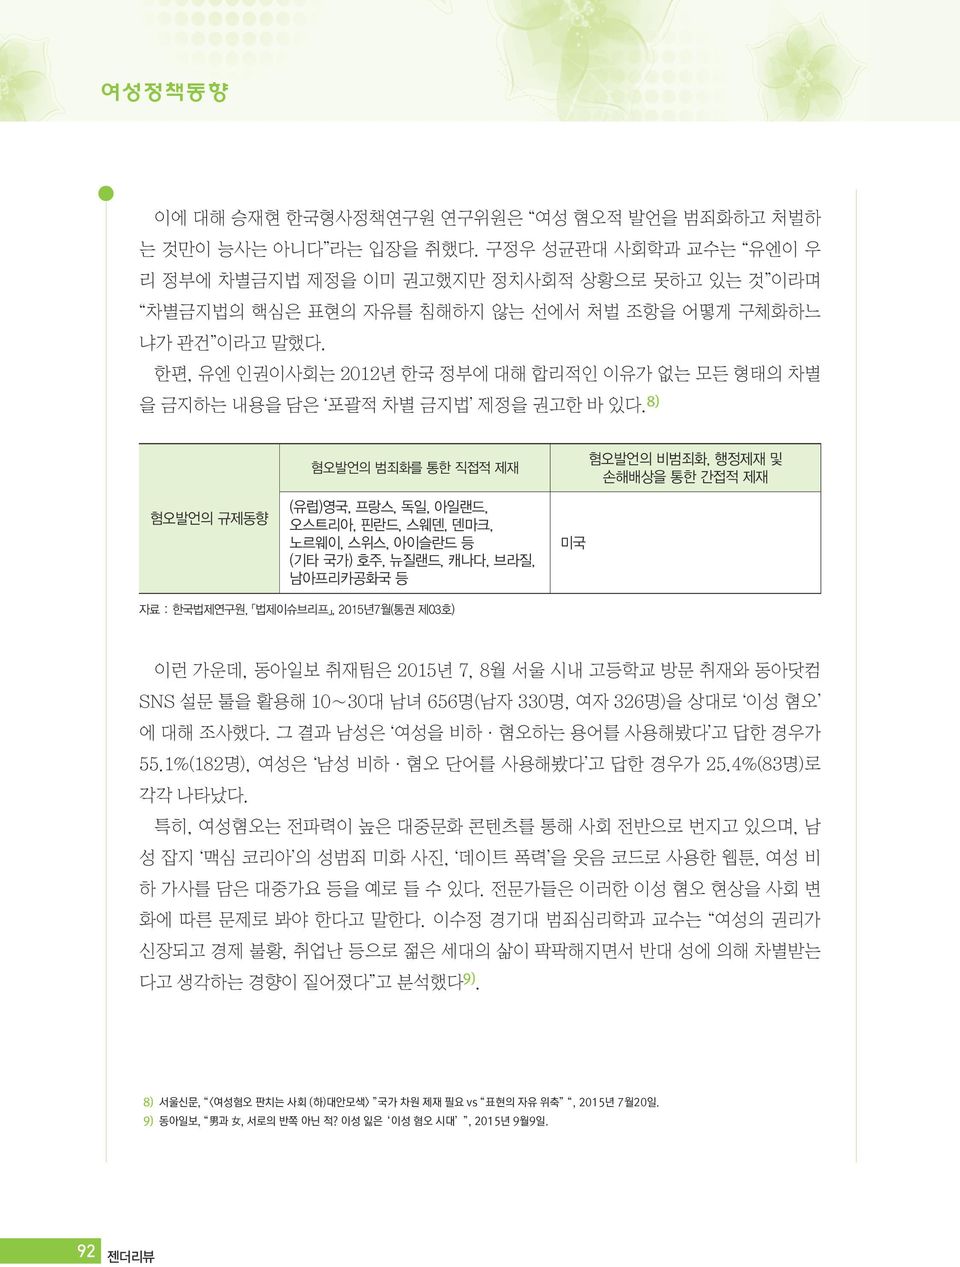 한편, 유엔 인권이사회는 2012년 한국 정부에 대해 합리적인 이유가 없는 모든 형태의 차별 을 금지하는 내용을 담은 포괄적 차별 금지법 제정을 권고한 바 있다.